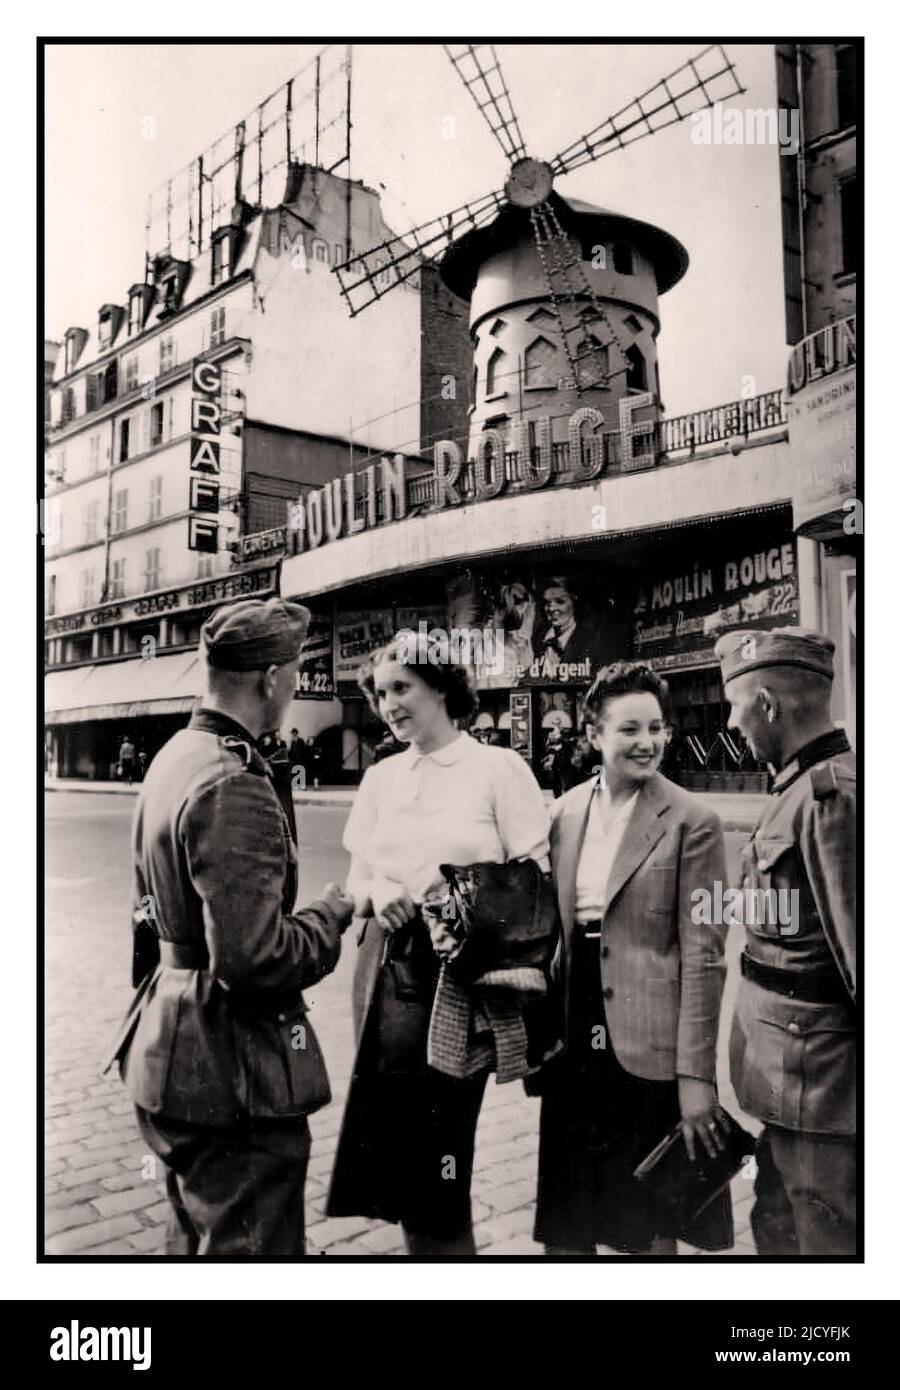 París ocupado Francia Nazi WW2 Imagen de propaganda con dos soldados alemanes de Wehrmacht con dos mujeres parisinas frente al Moulin Rouge, durante la ocupación nazi de París 1940 de junio París Francia Foto de stock